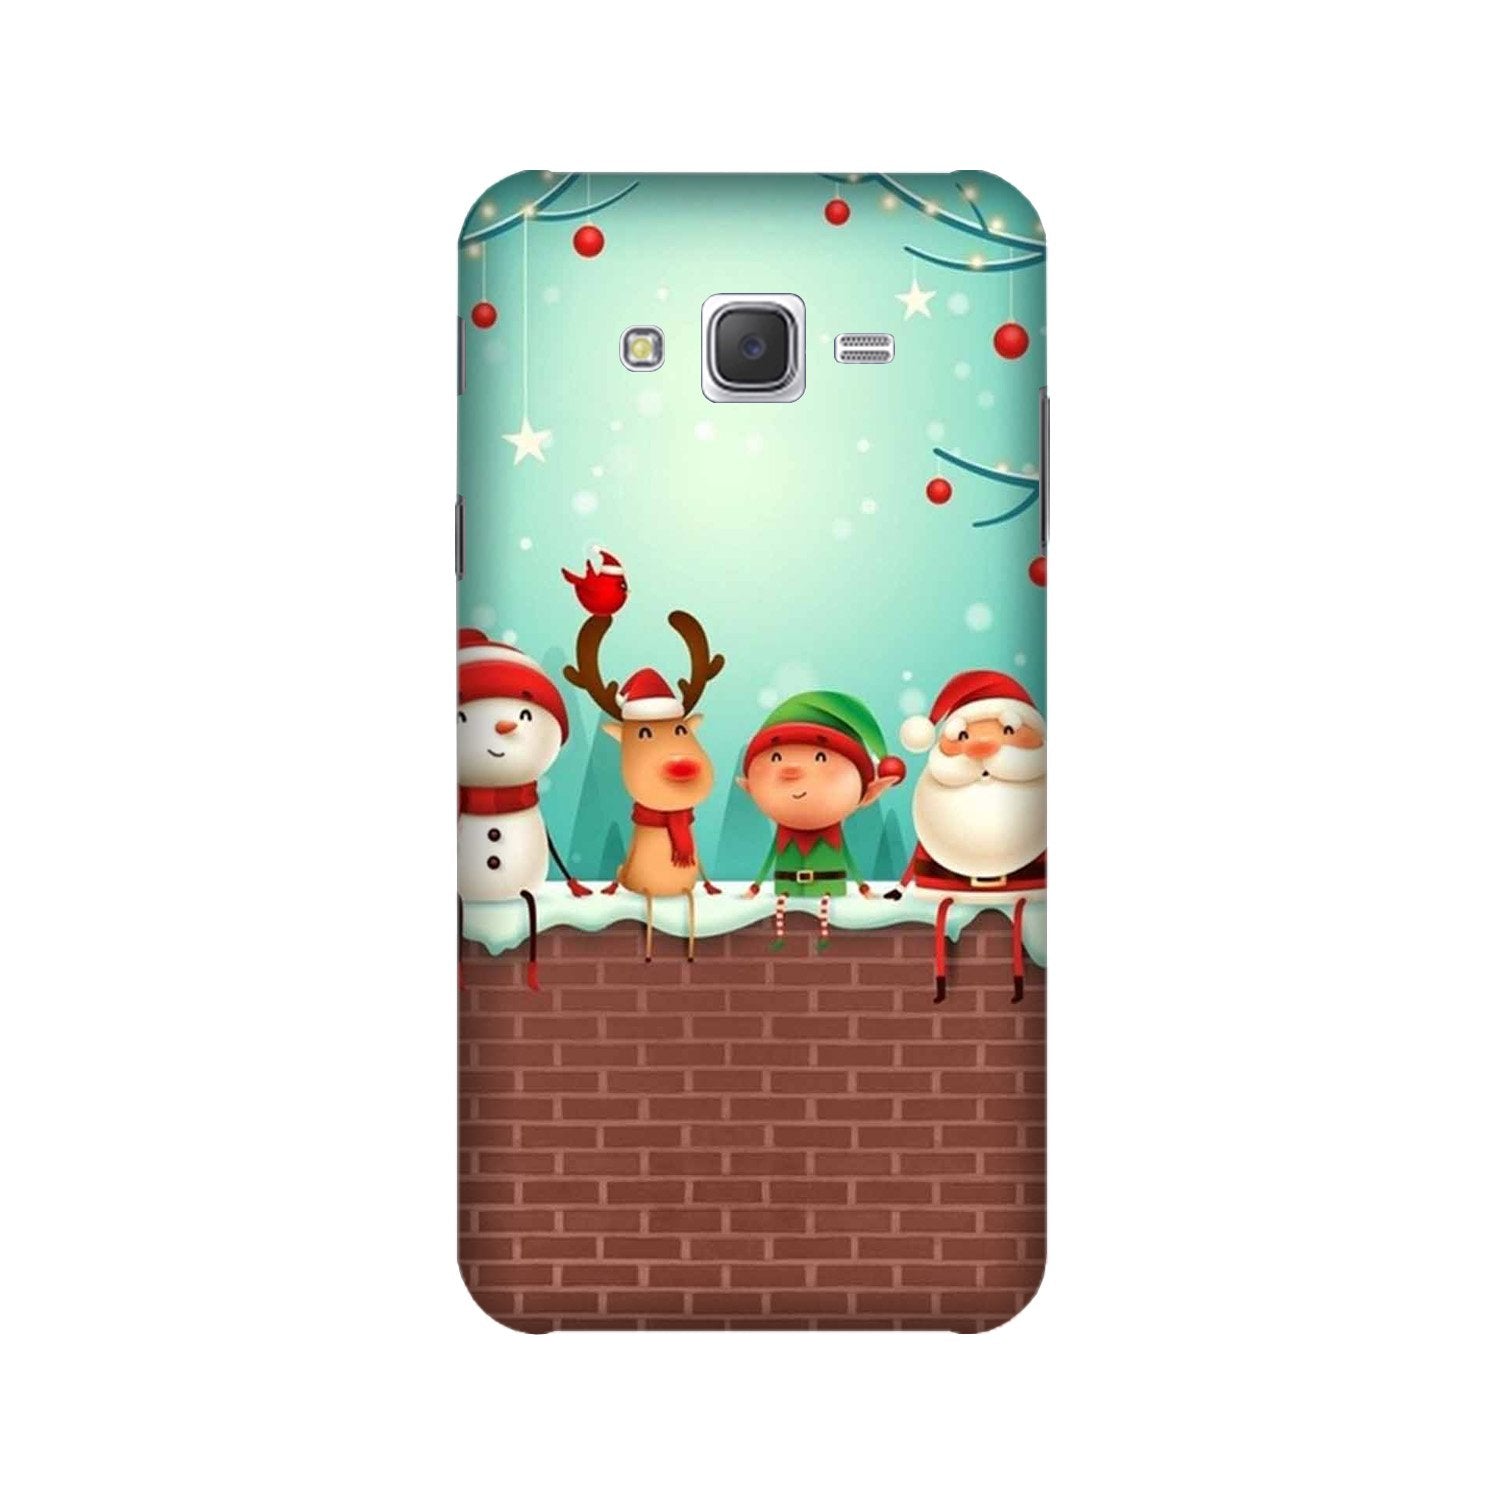 Santa Claus Mobile Back Case for Galaxy E7  (Design - 334)